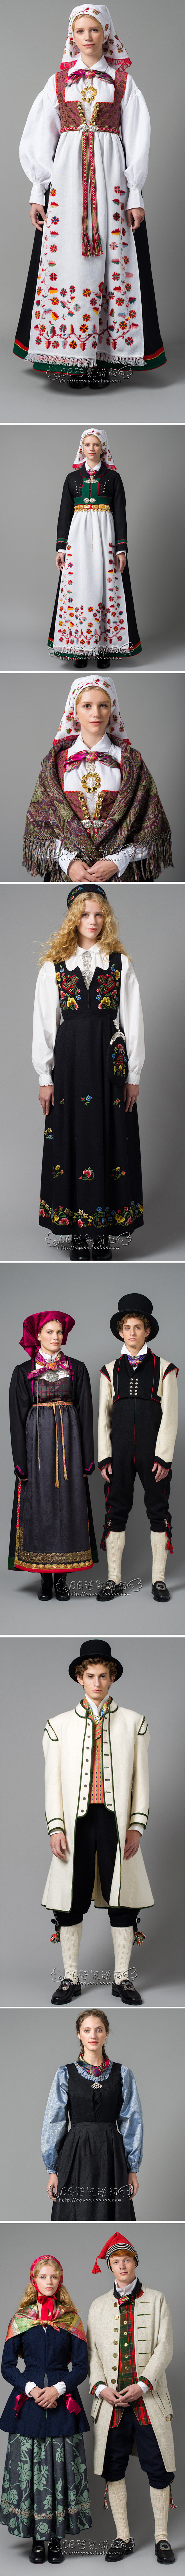 北欧挪威传统服饰参考 服饰设计 素材集 ...